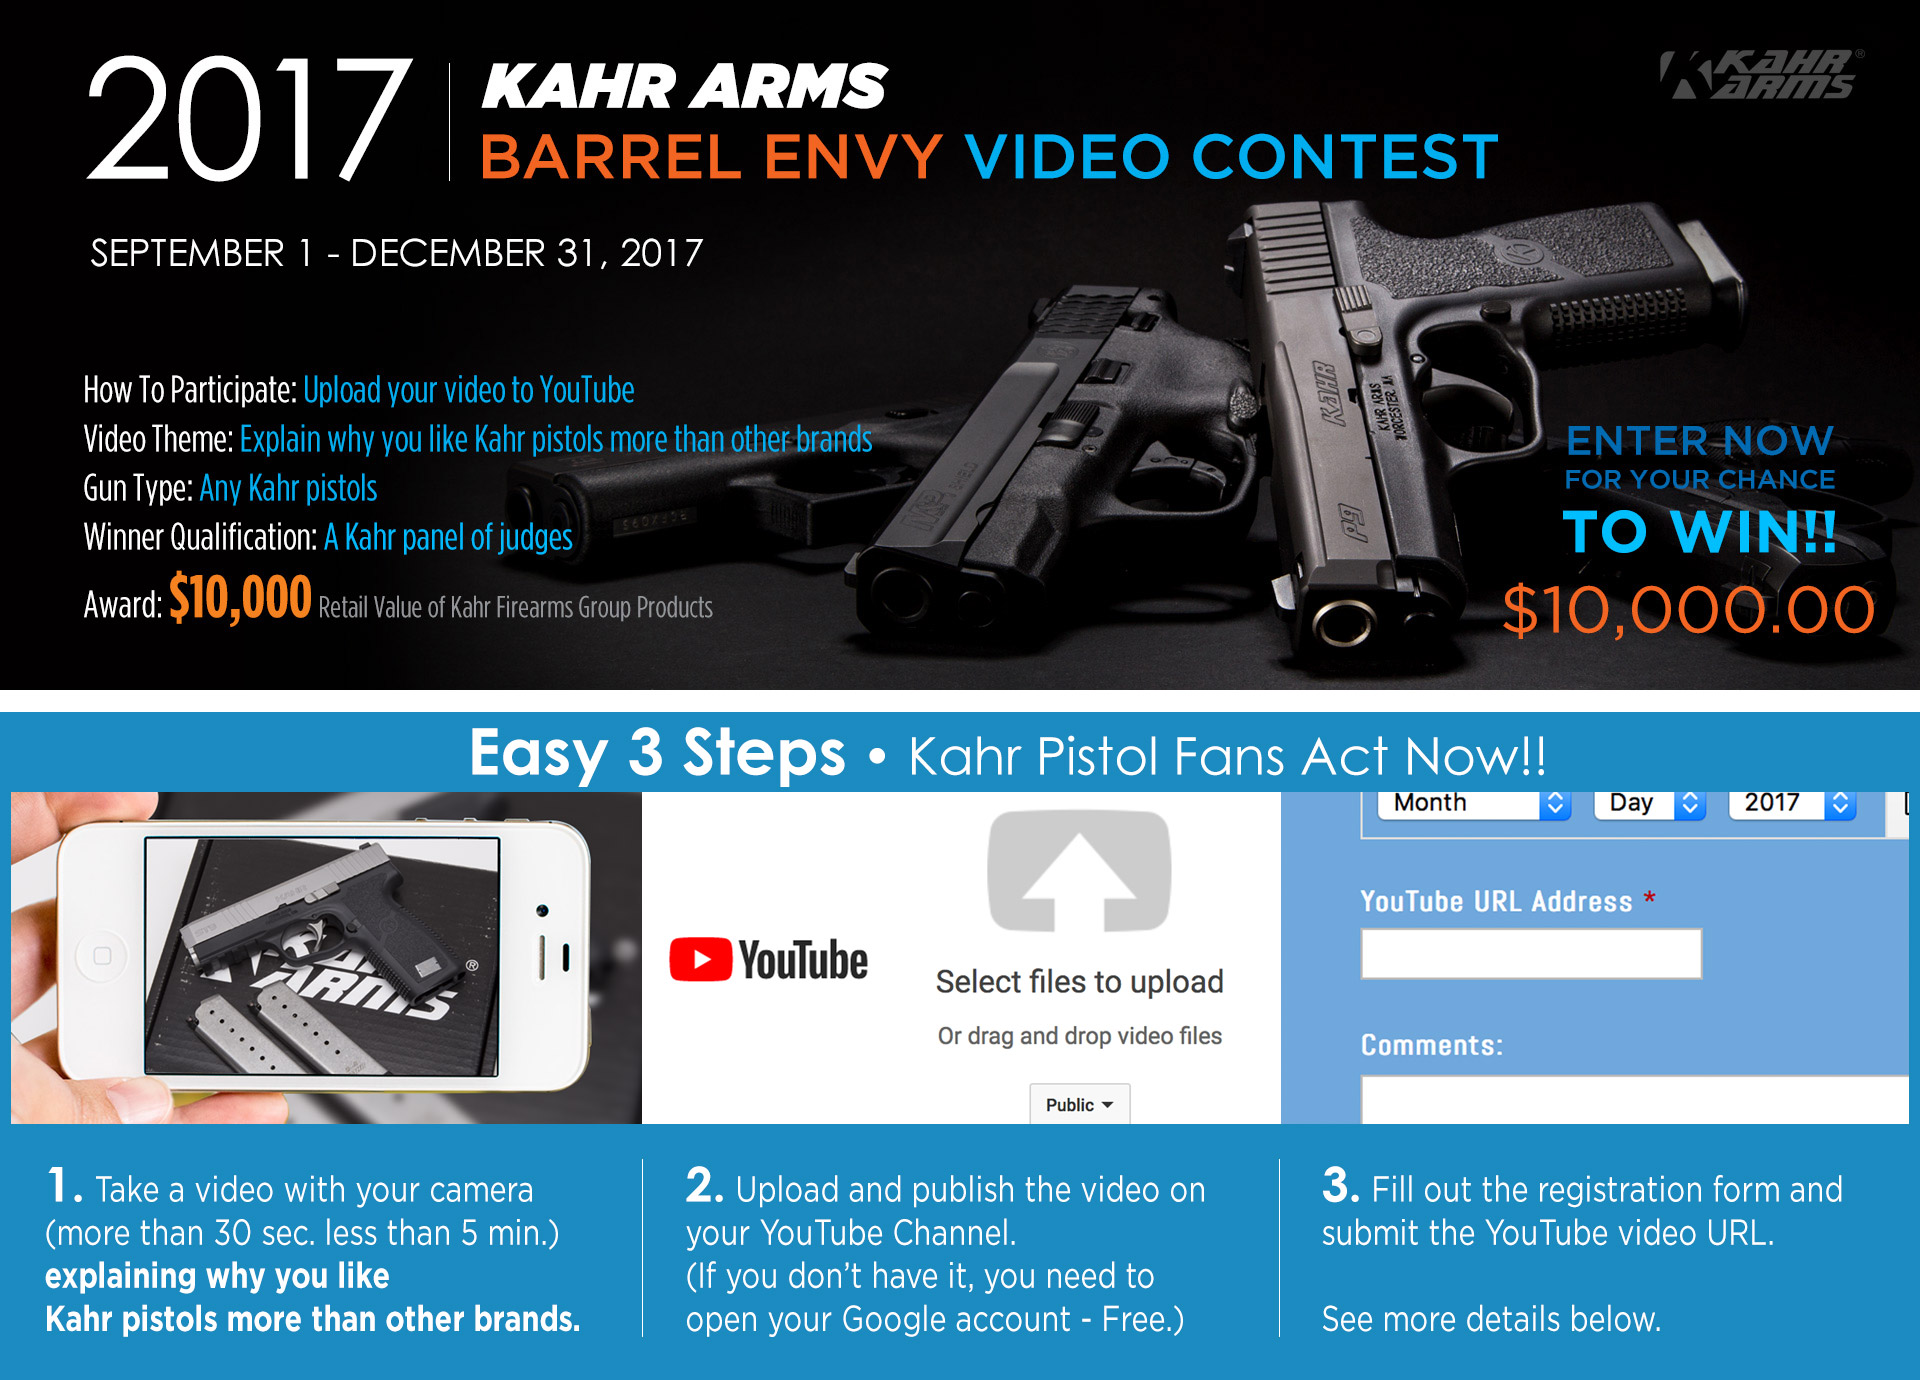 KAHR ARMS Barrel Envy Video Contest